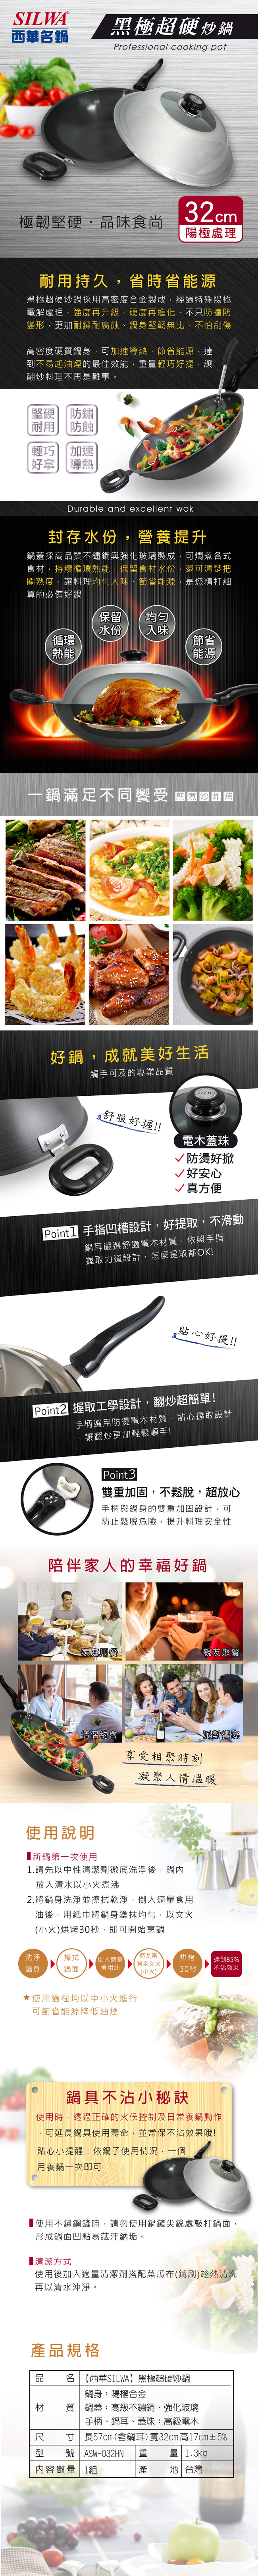 【SILWA西華】黑極超硬炒鍋32cm(含蓋)/黑極超硬平底鍋28cm(含蓋)